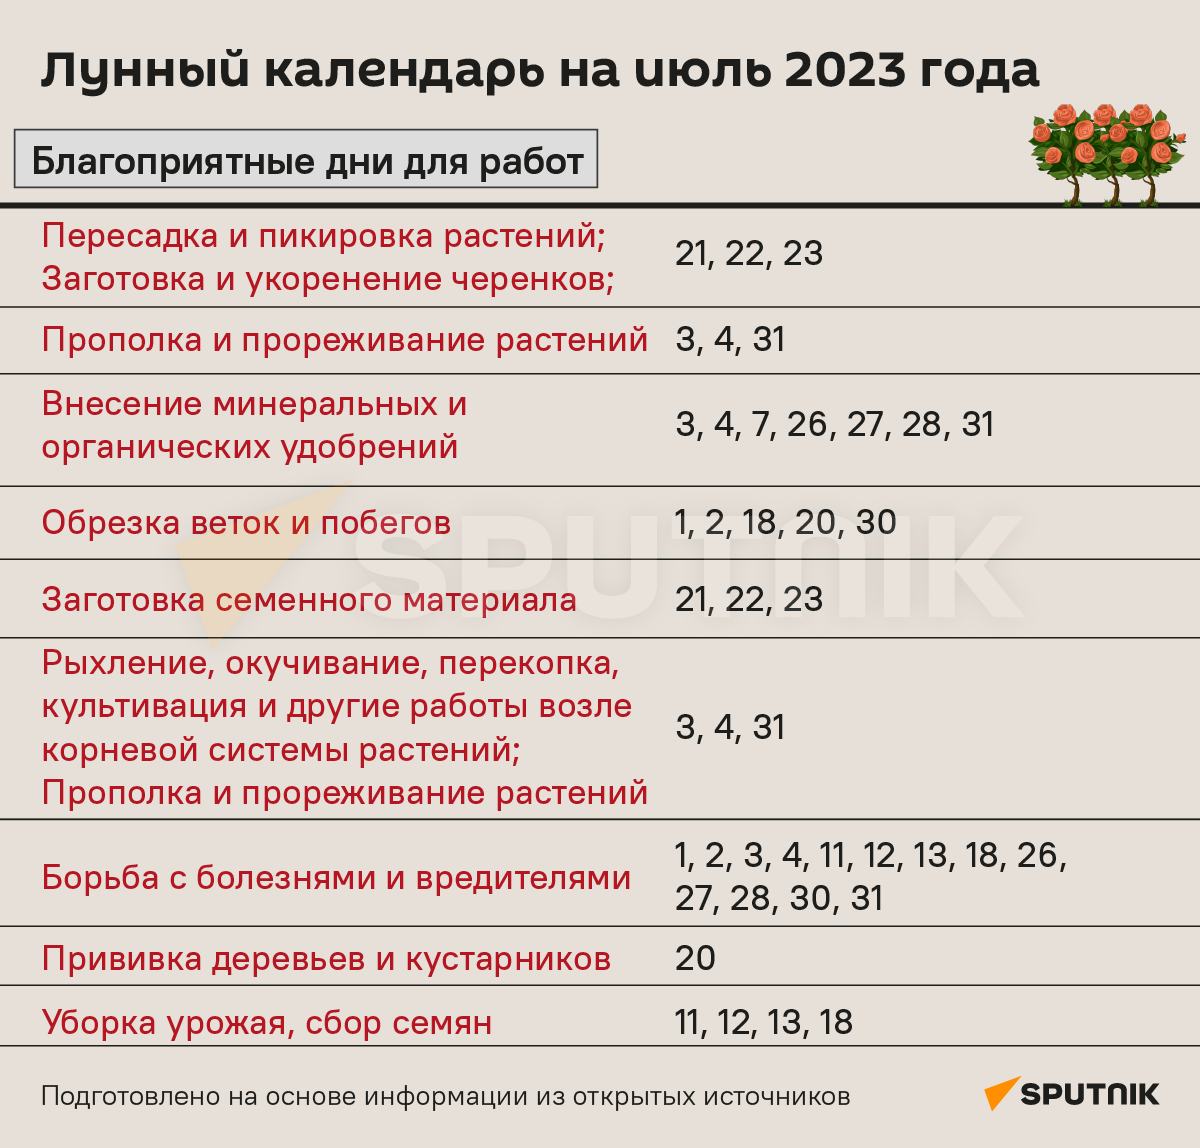 Лунный календарь садовода и огородника на июль 2023 года - Sputnik Беларусь